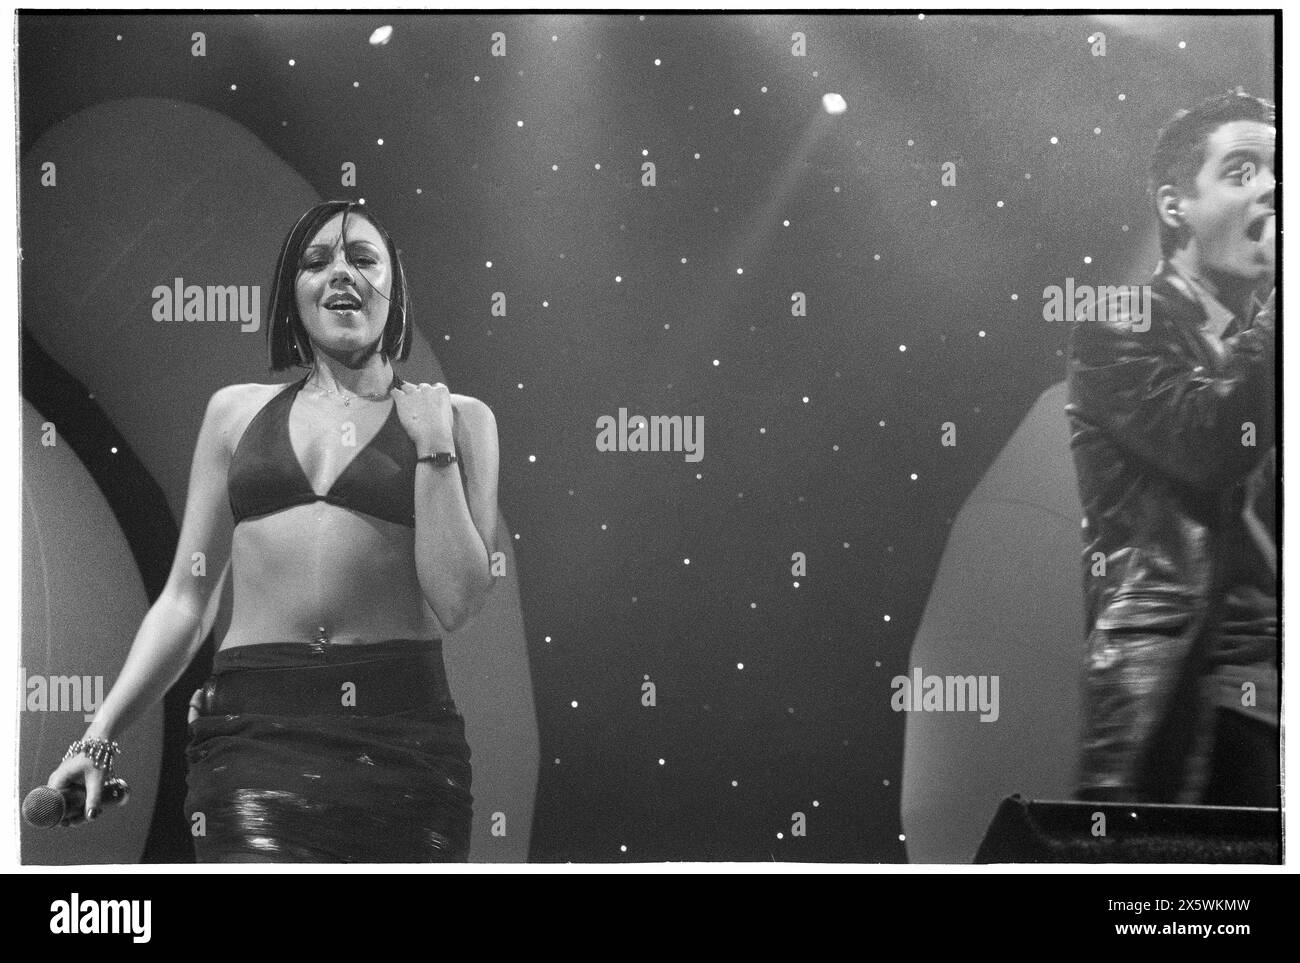 MICHELLE HEATON, LIBERTY X, KONZERT, 2001: Michelle Heaton von Liberty X trat live auf ihrer ersten UK Tour mit der Smash Hits Tour in der Cardiff International Arena, CIA, Cardiff, Wales, UK am 4. Dezember 2001 auf. Foto: Rob Watkins. INFO: Liberty X, eine britisch-irische Popgruppe, die 2001 in der Fernsehsendung Popstars gegründet wurde, erzielte Erfolge mit Hits wie „Just a Little“ und „Thinking IT Over“. Ihre energiegeladenen Auftritte und eingängigen Melodien machten sie zu einem Grundpfeiler der Popszene der frühen 2000er Jahre. Stockfoto